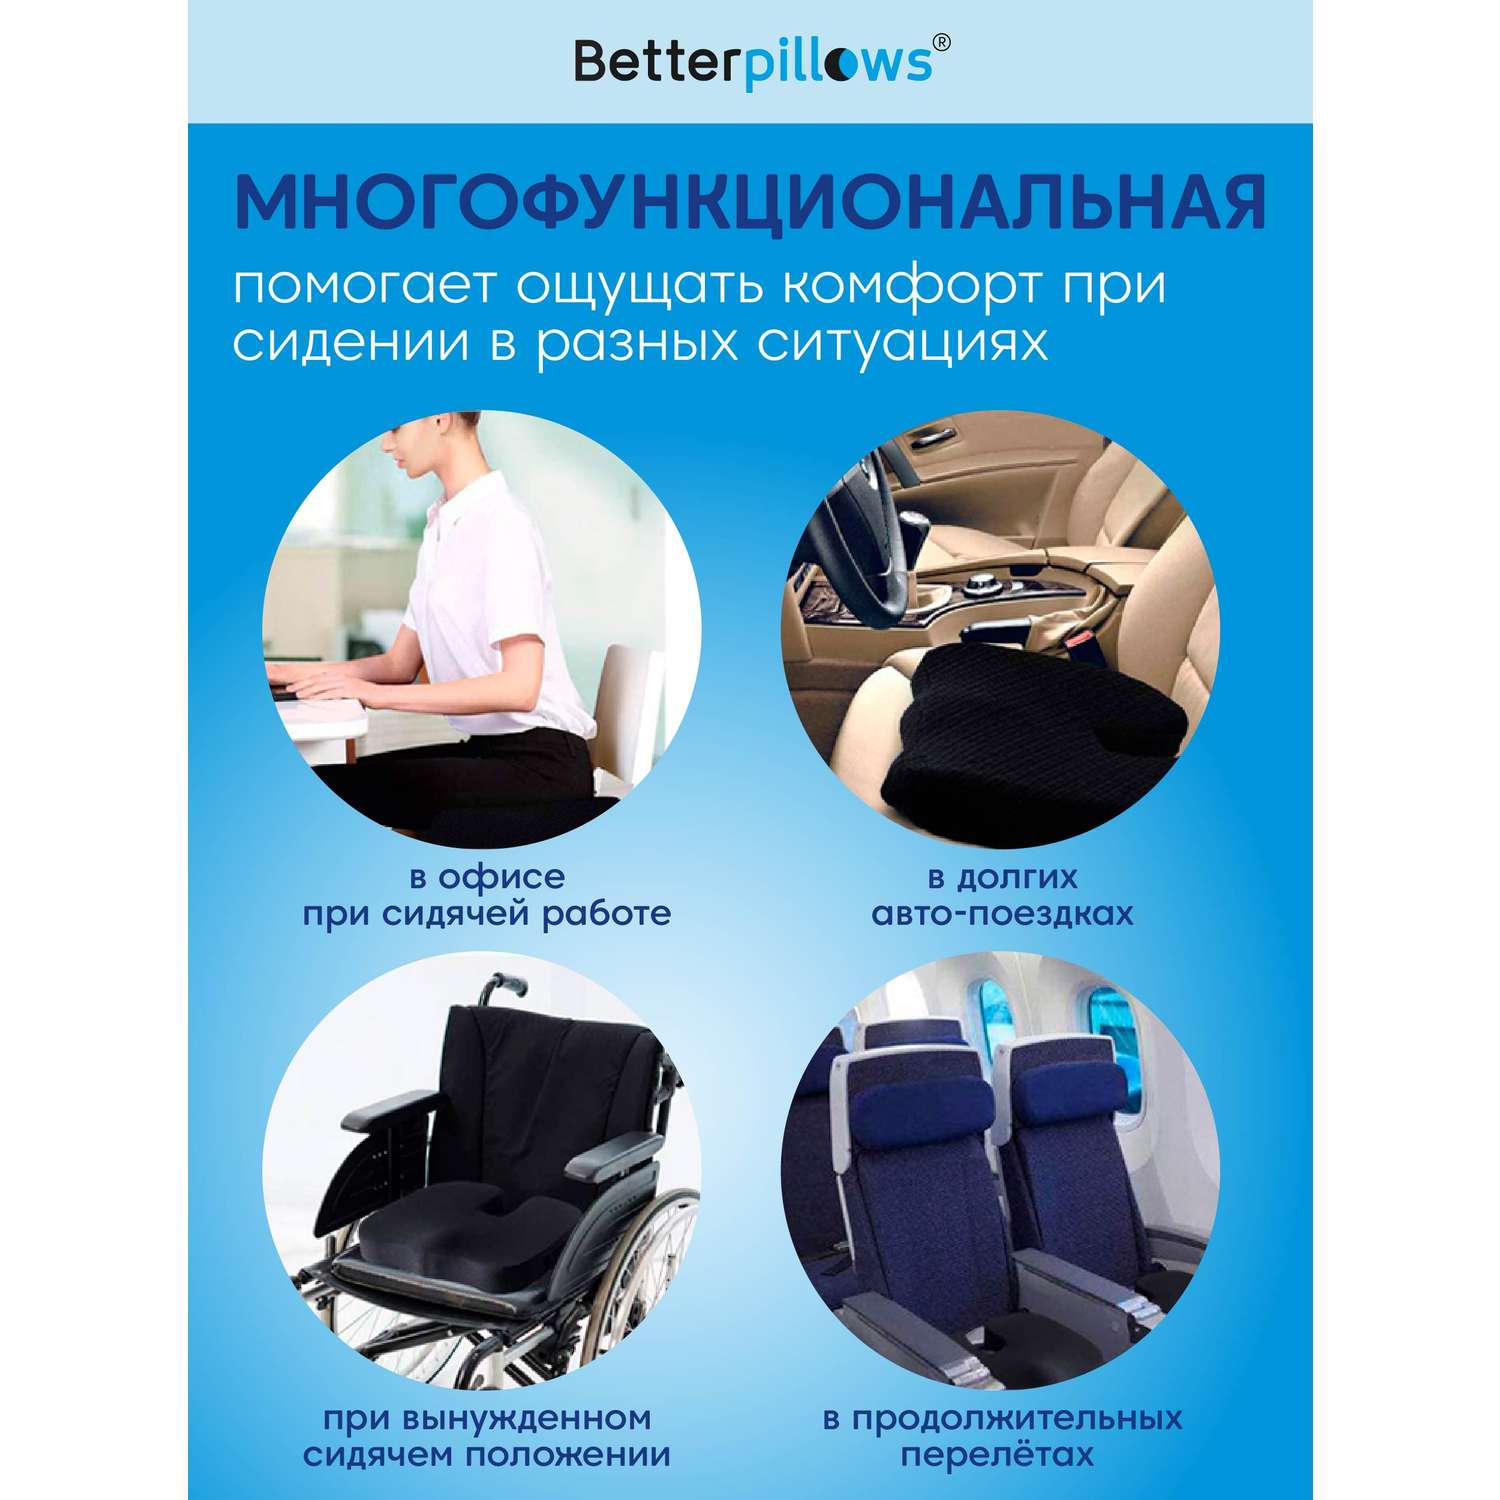 Ортопедическая подушка Betterpillows Comfort seat black - фото 5